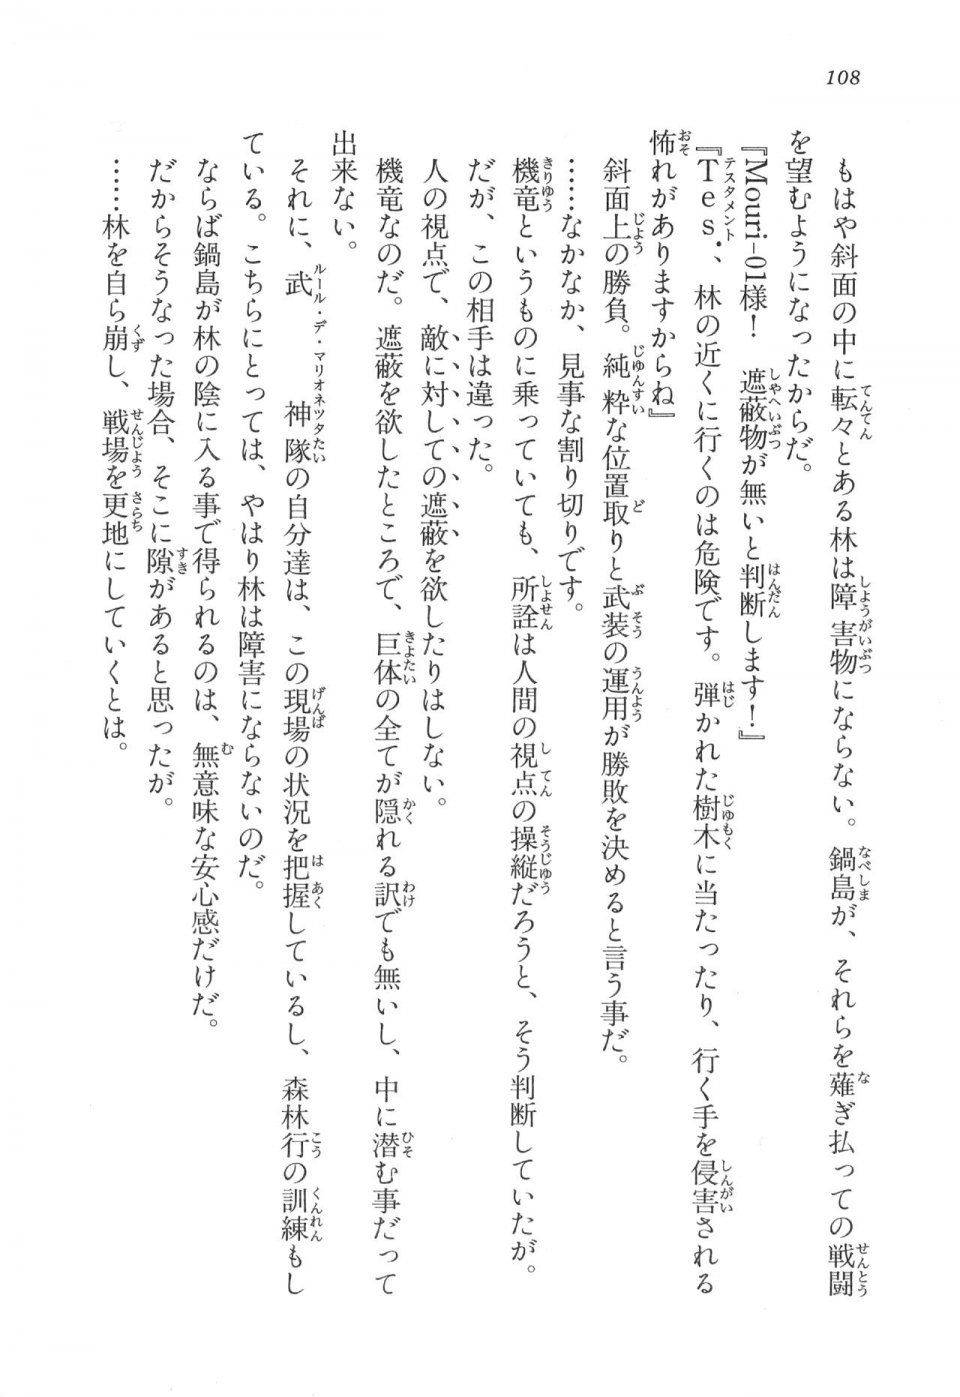 Kyoukai Senjou no Horizon LN Vol 17(7B) - Photo #108